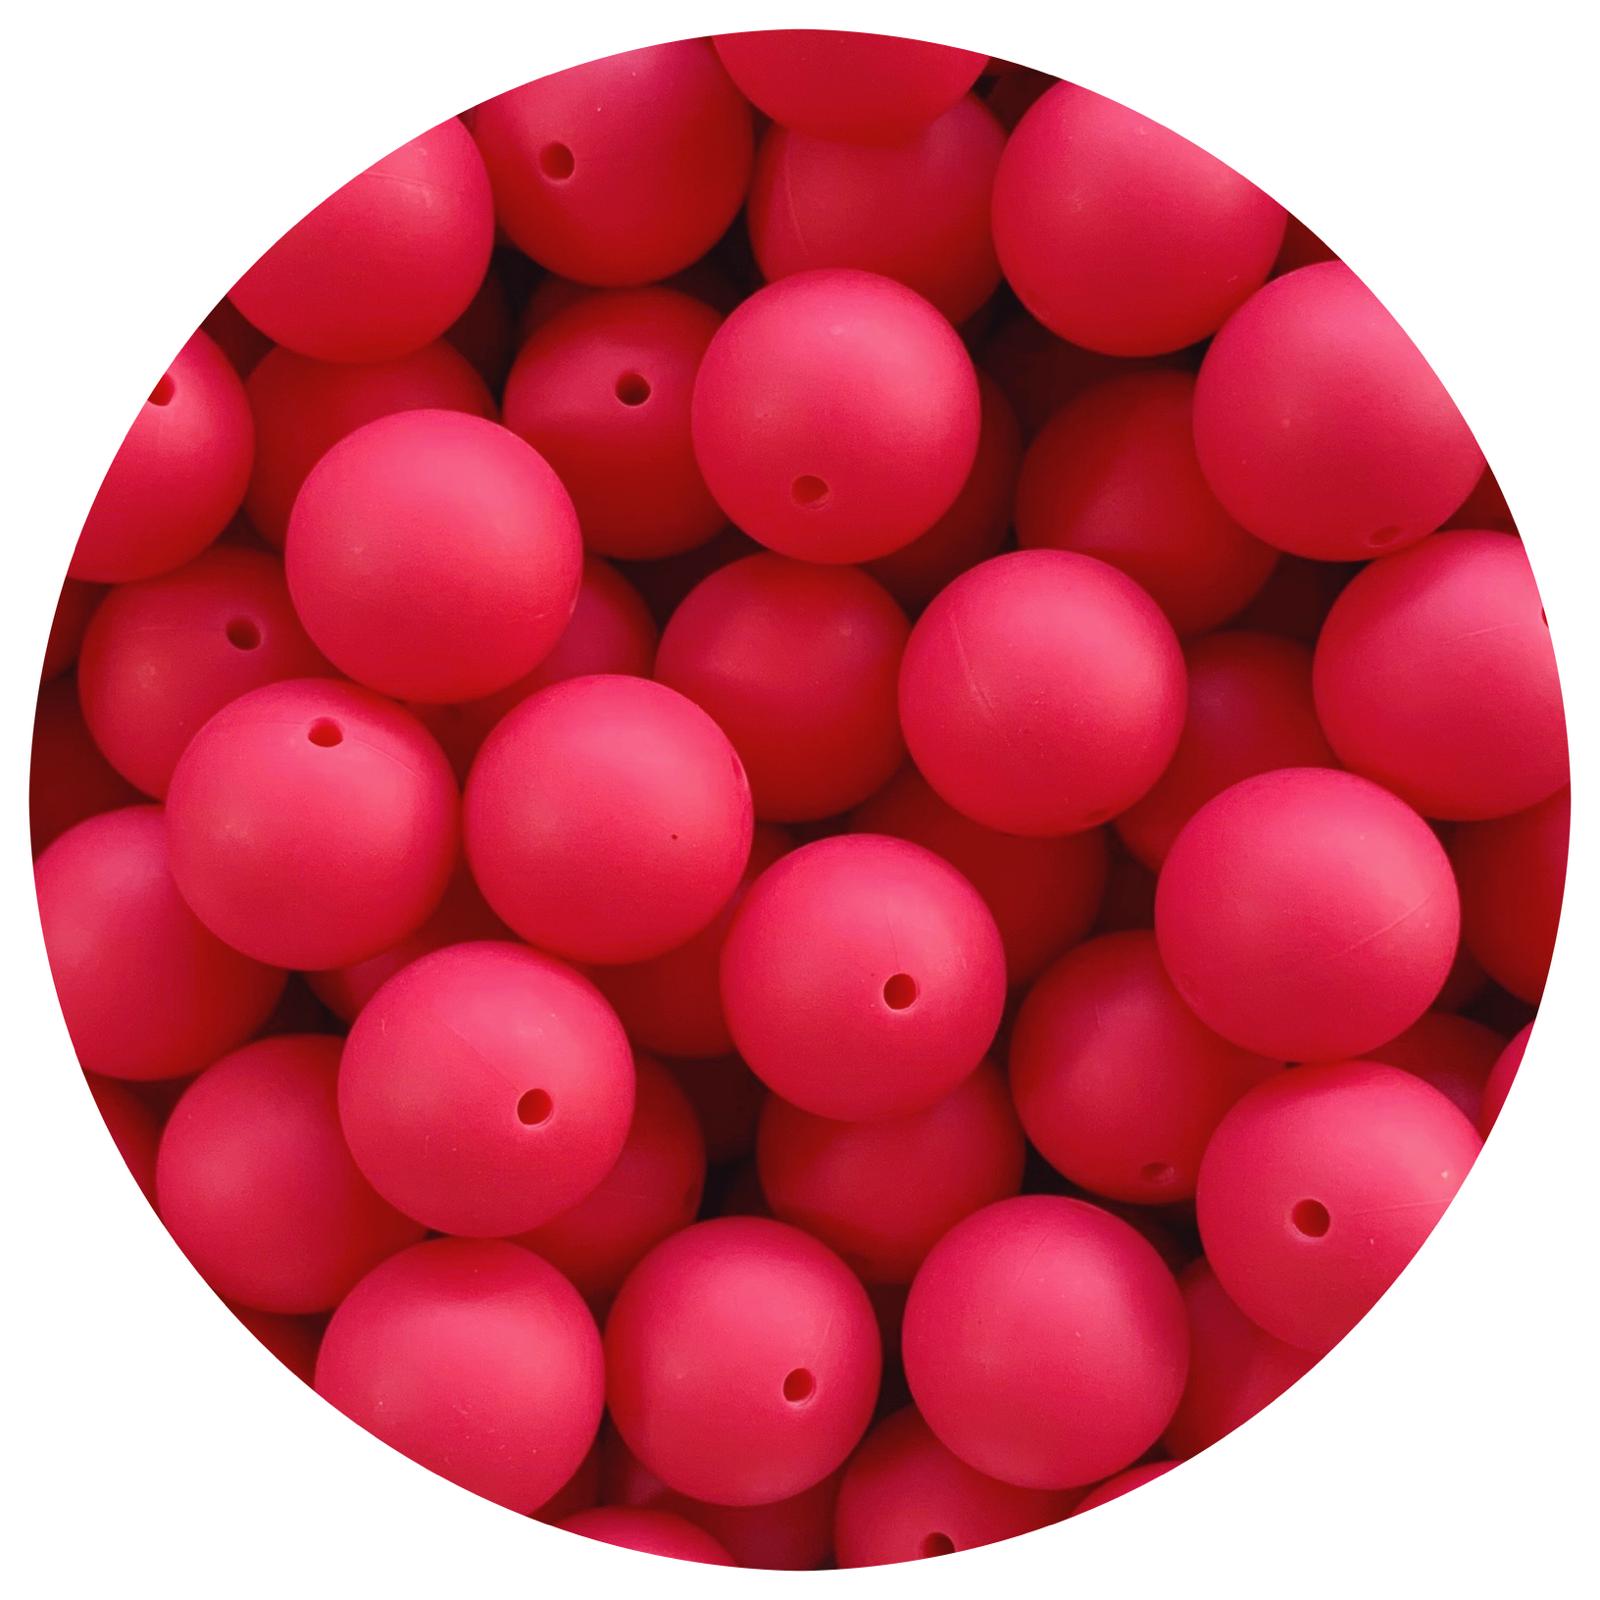 Raspberry - 19mm round - 5 Beads